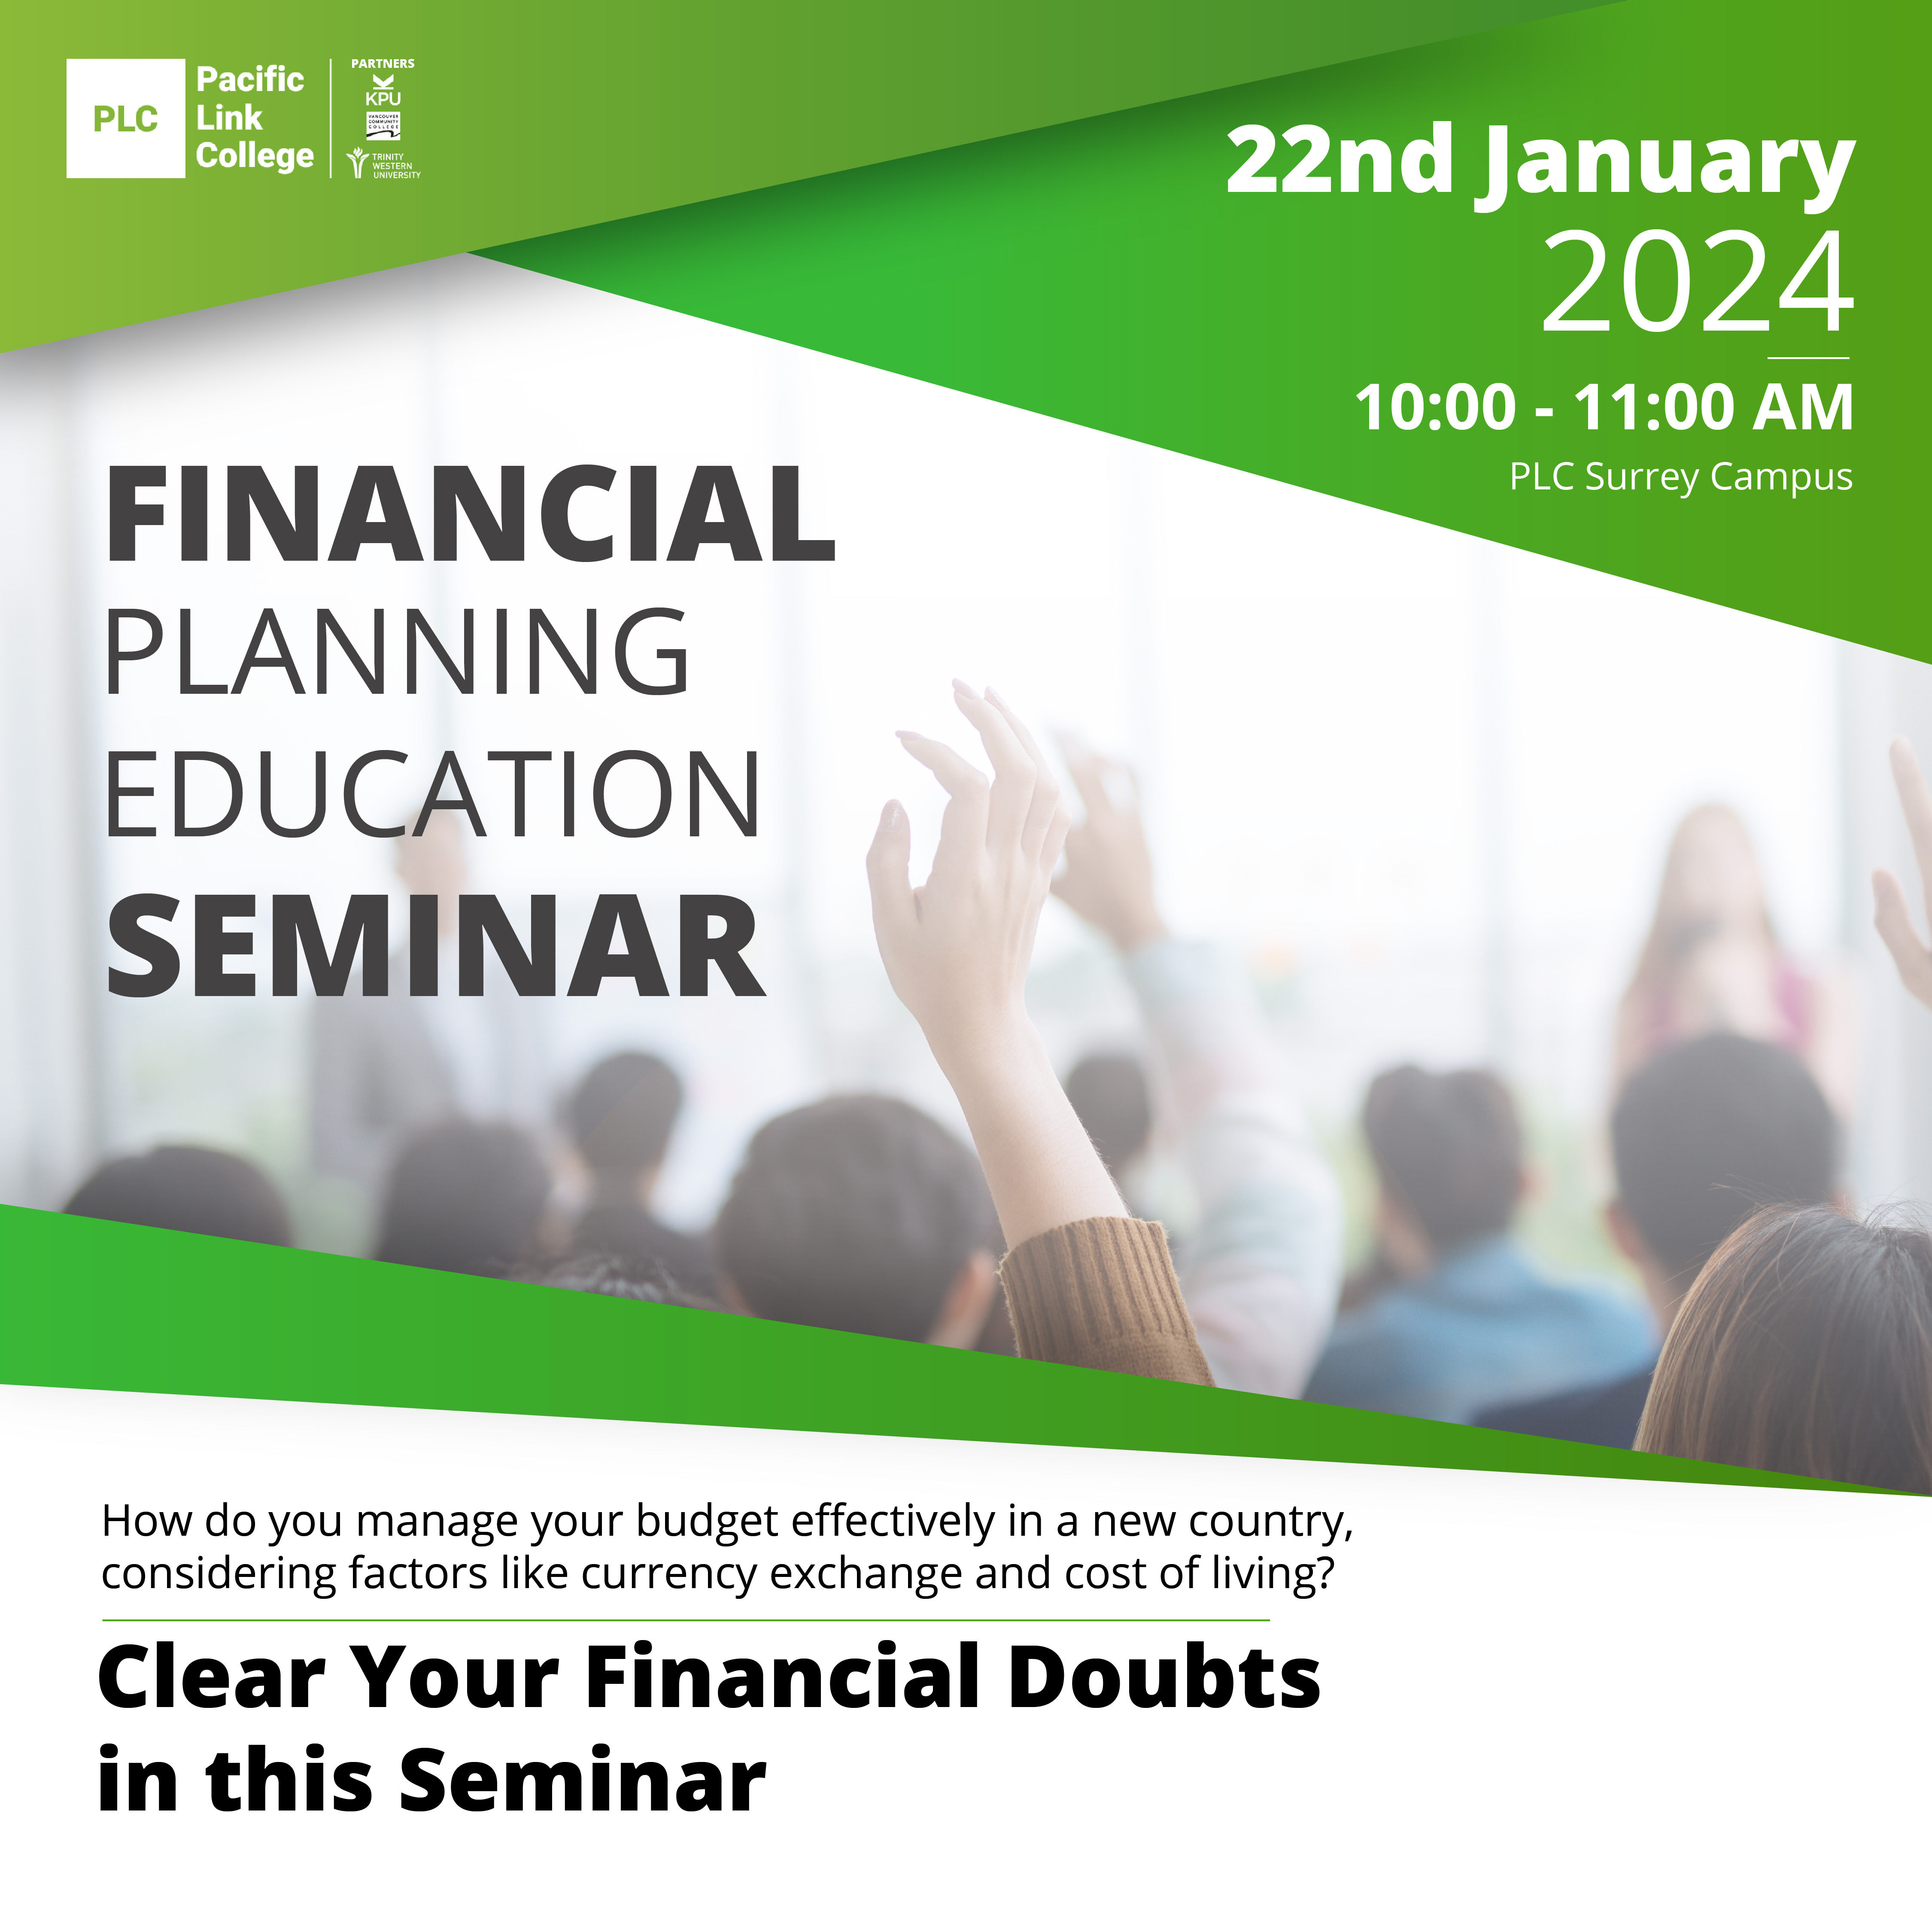 Financial Planning Education Seminar